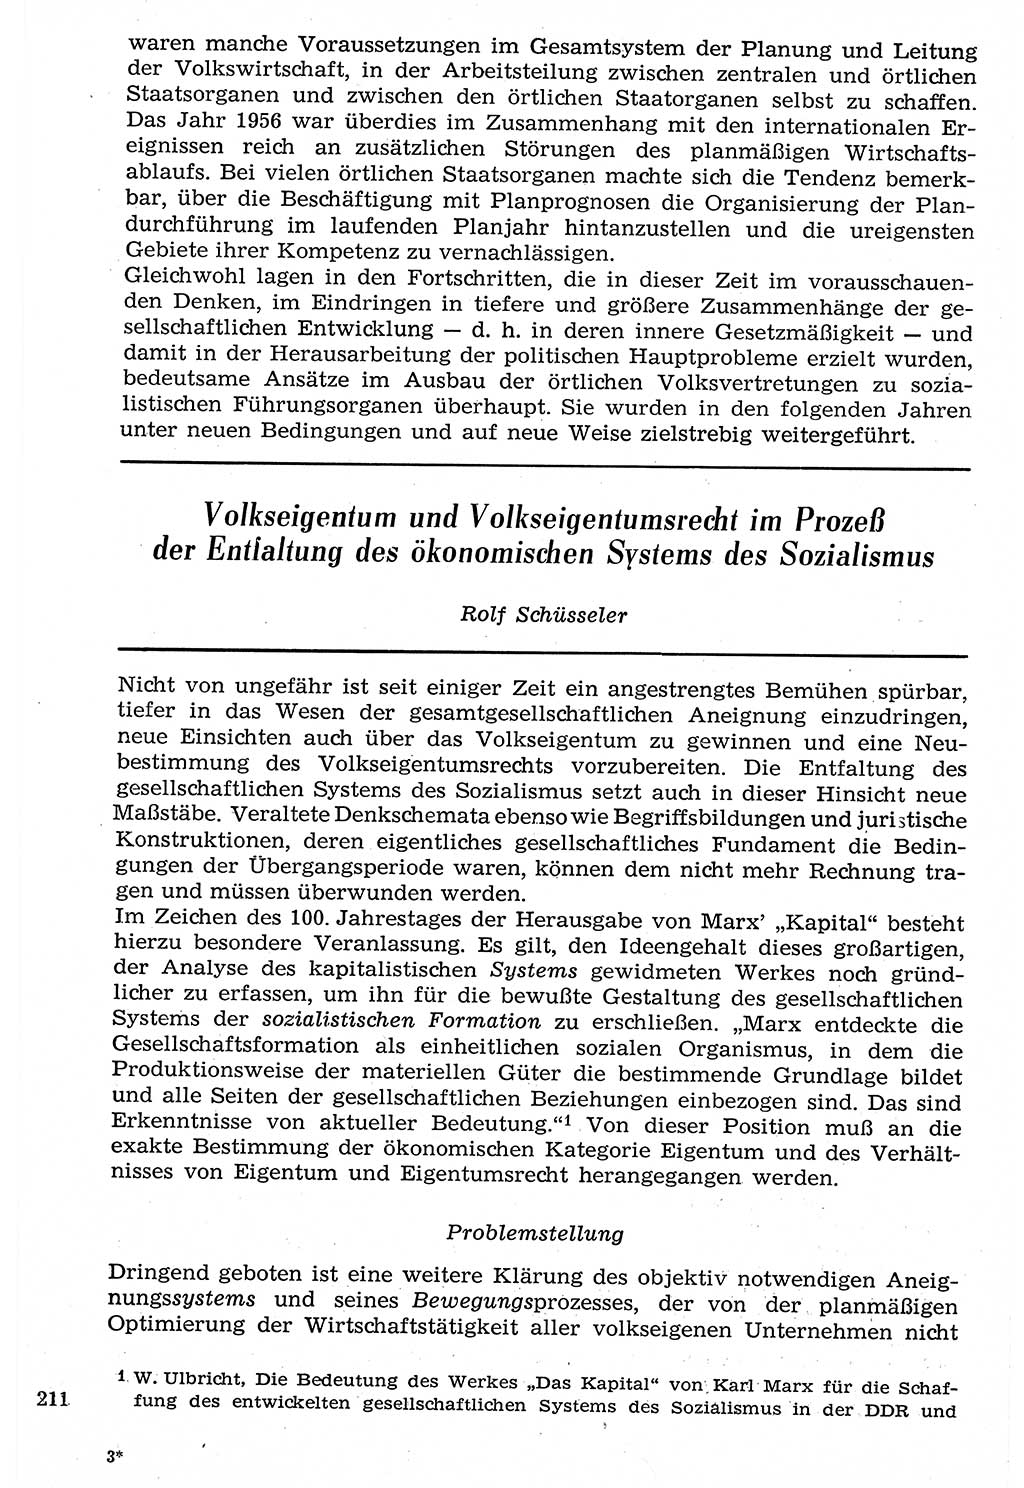 Staat und Recht (StuR), 17. Jahrgang [Deutsche Demokratische Republik (DDR)] 1968, Seite 211 (StuR DDR 1968, S. 211)